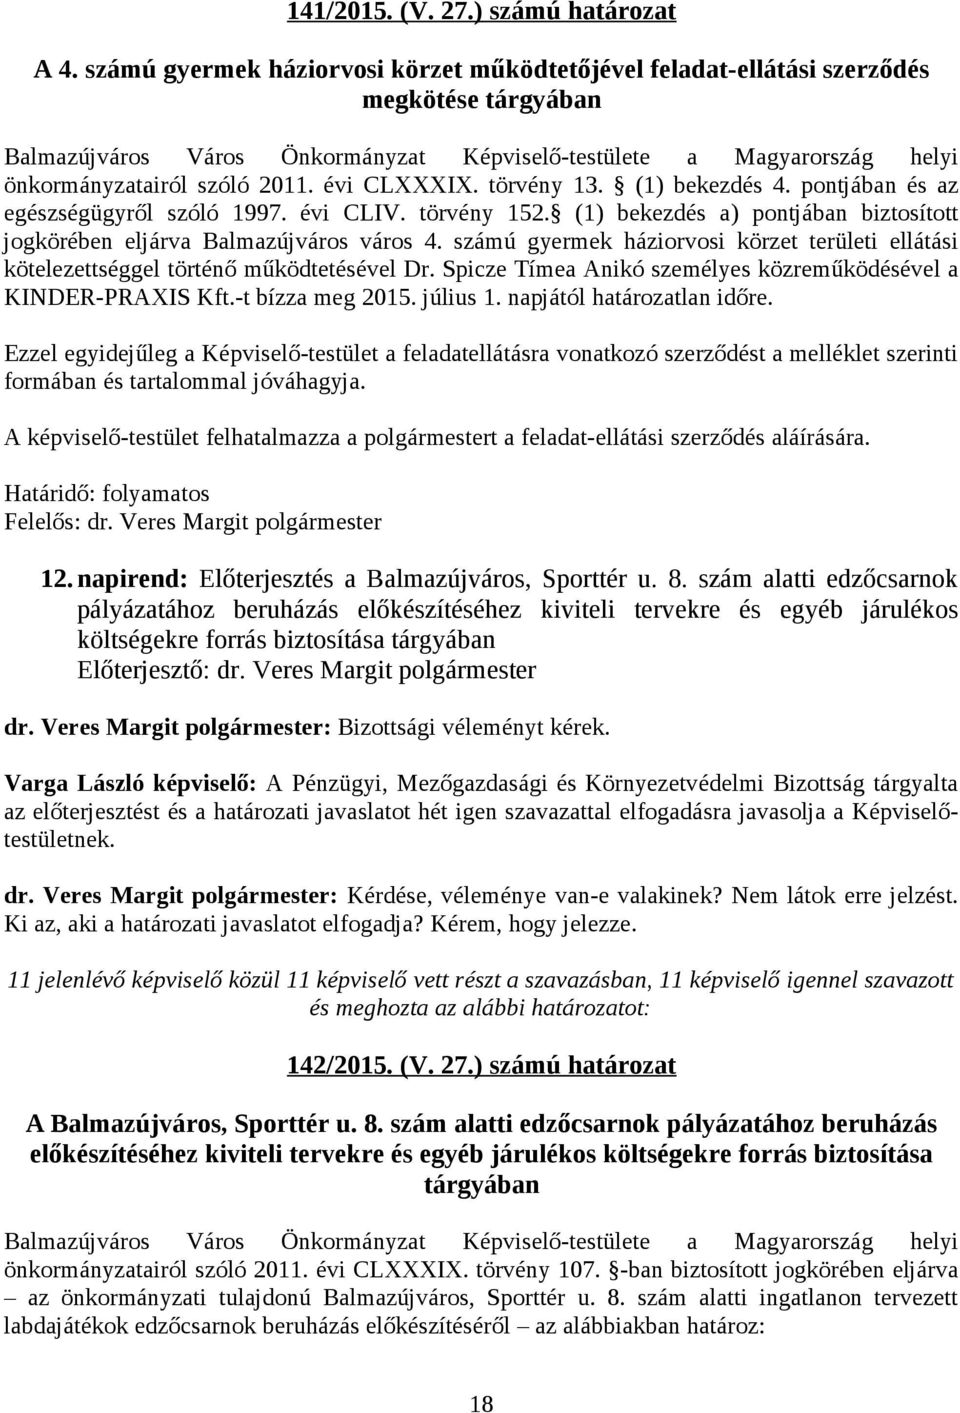 évi CLXXXIX. törvény 13. (1) bekezdés 4. pontjában és az egészségügyről szóló 1997. évi CLIV. törvény 152. (1) bekezdés a) pontjában biztosított jogkörében eljárva Balmazújváros város 4.